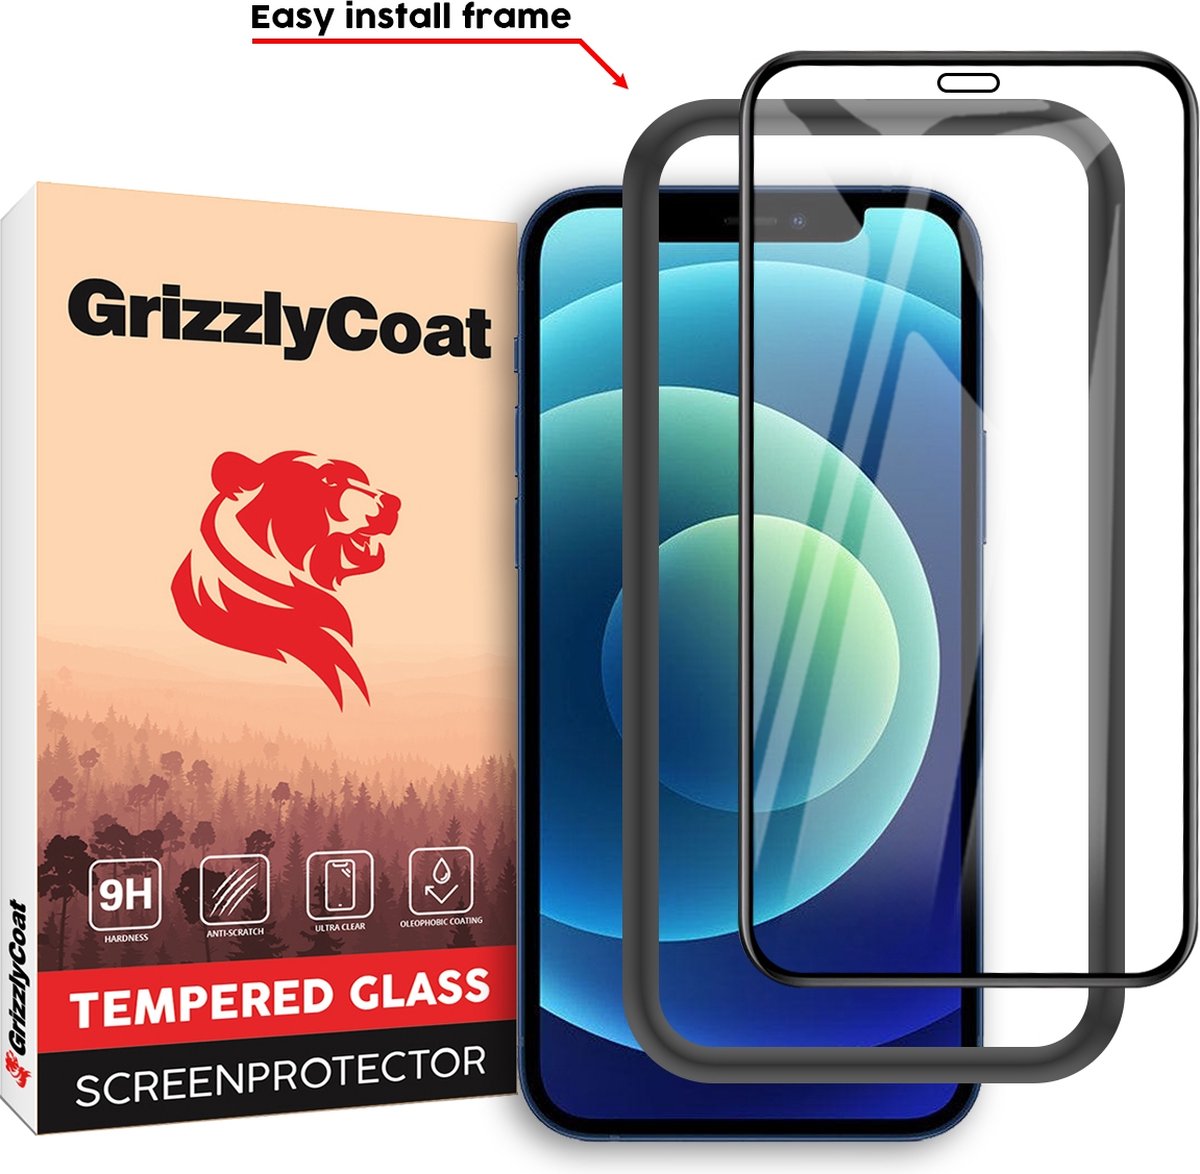 GrizzlyCoat Easy Fit Screenprotector geschikt voor Apple iPhone 12 Pro Glazen Screenprotector - Case Friendly + Installatie Frame - Zwart